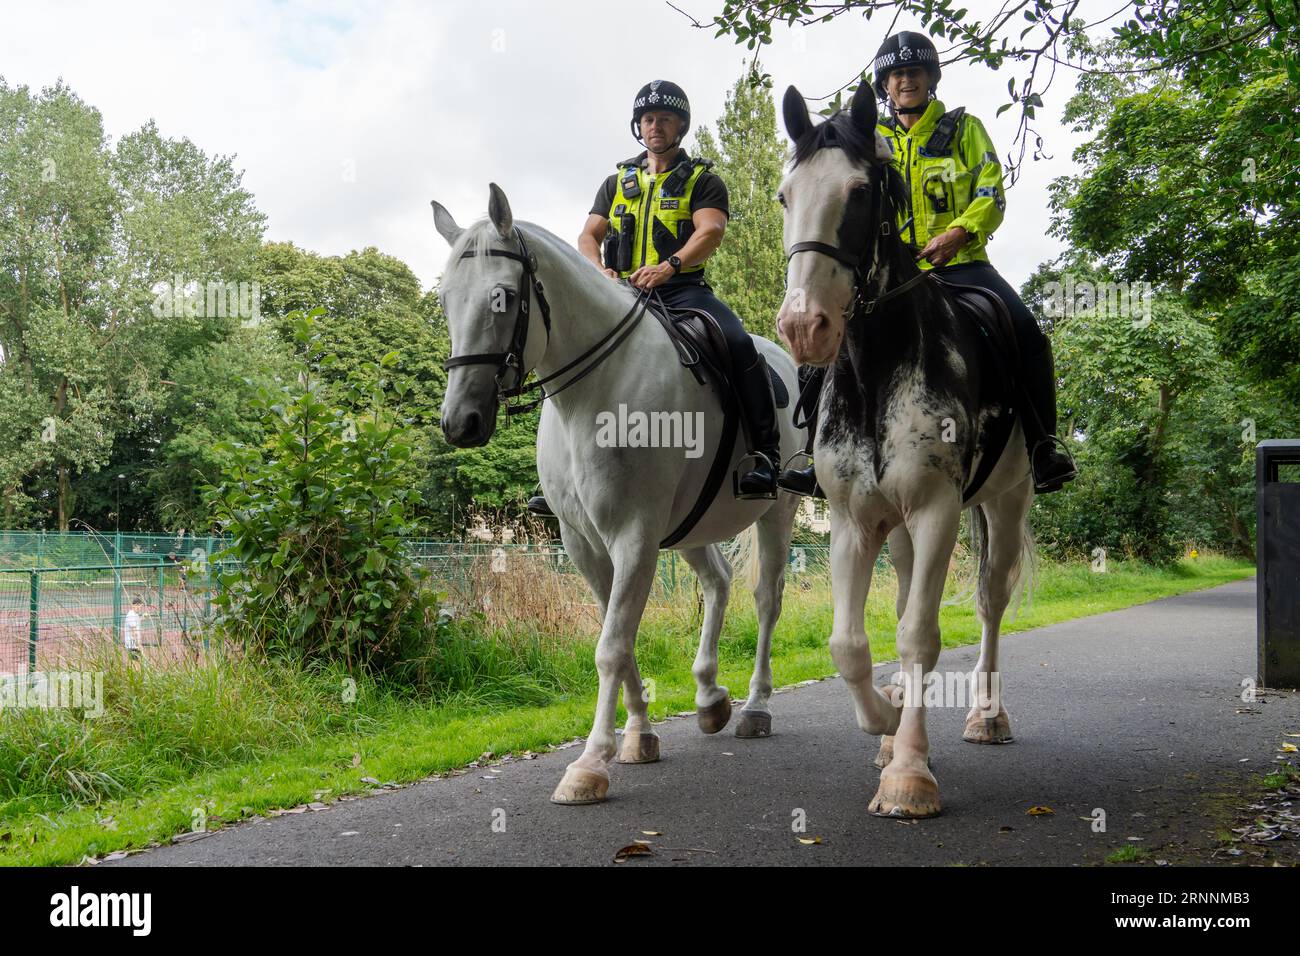 Zwei britische Polizisten zu Pferd in einem öffentlichen Park. Konzept der berittenen Polizei, Polizei, Patrouillen, Bobbys auf dem Schlag, Diensttiere Stockfoto